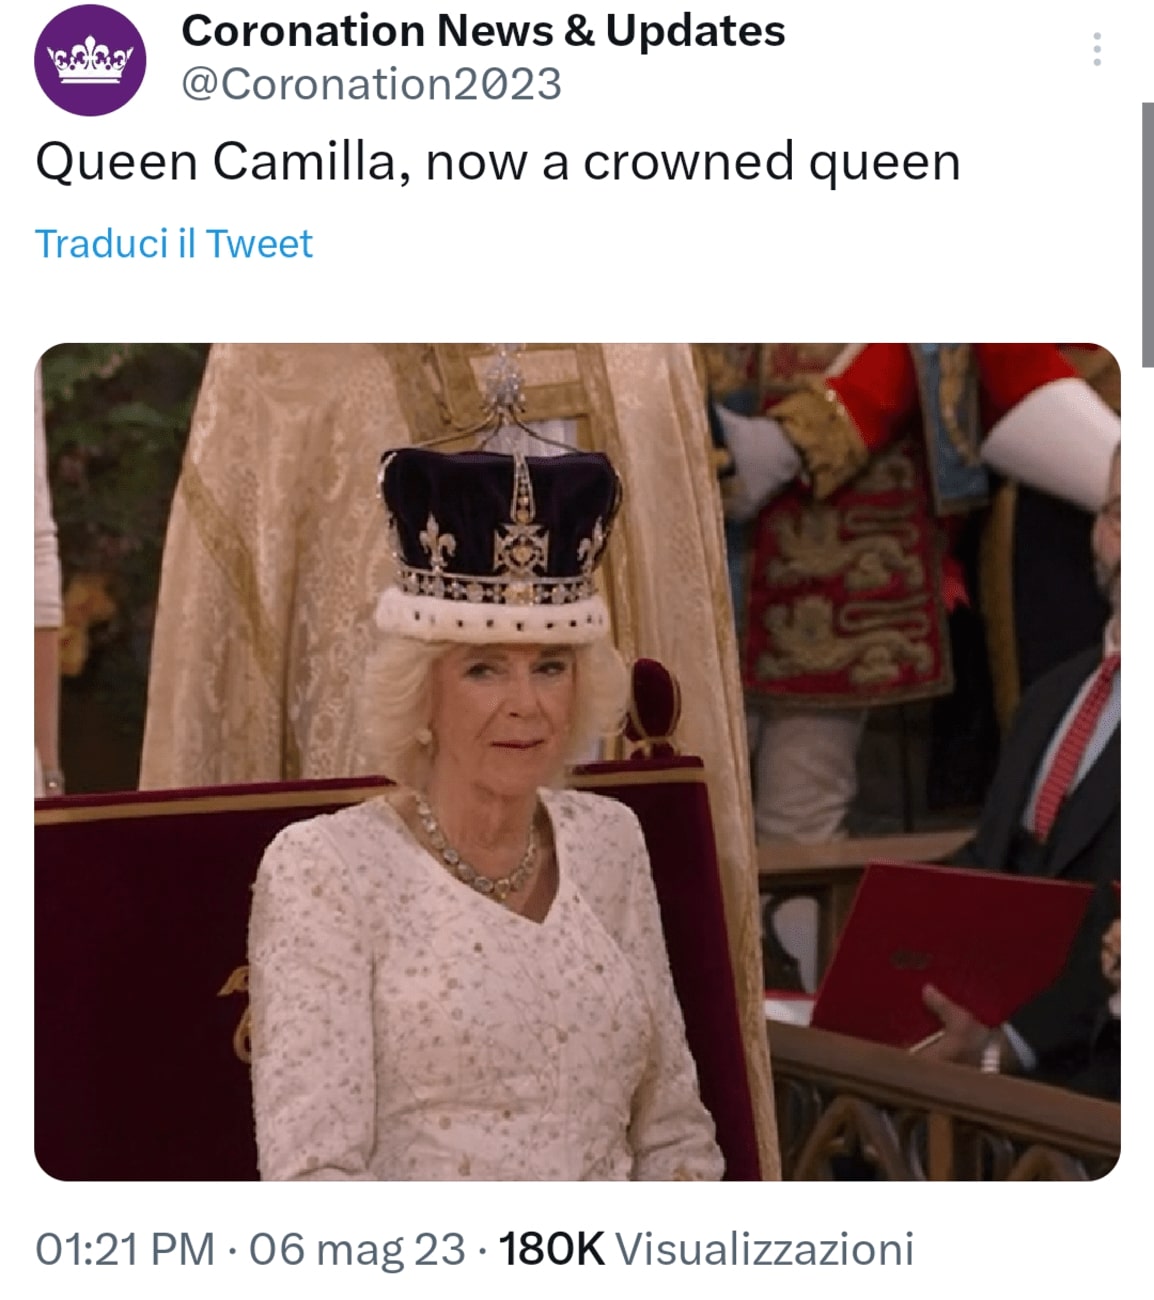 La Regina Camilla, pochi istanti dopo essere stata ufficialmente 'incoronata'. Fonte: Coronation2023 - Twitter